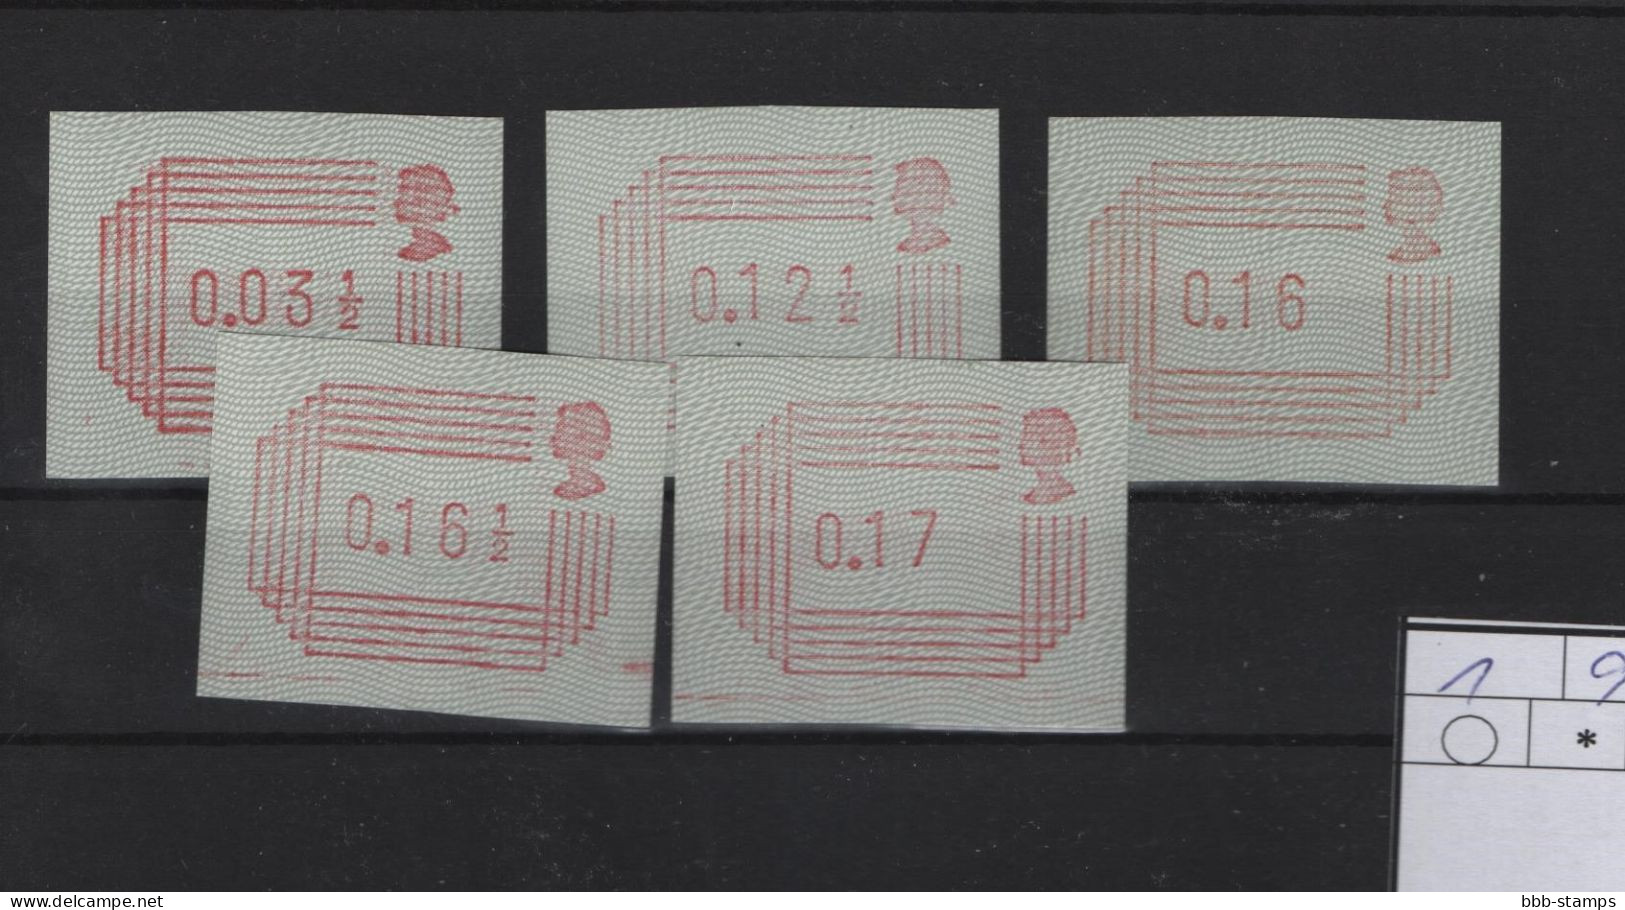 GB Michel Cat.No..  ATM Mnh/** 1 Set - Post & Go Stamps